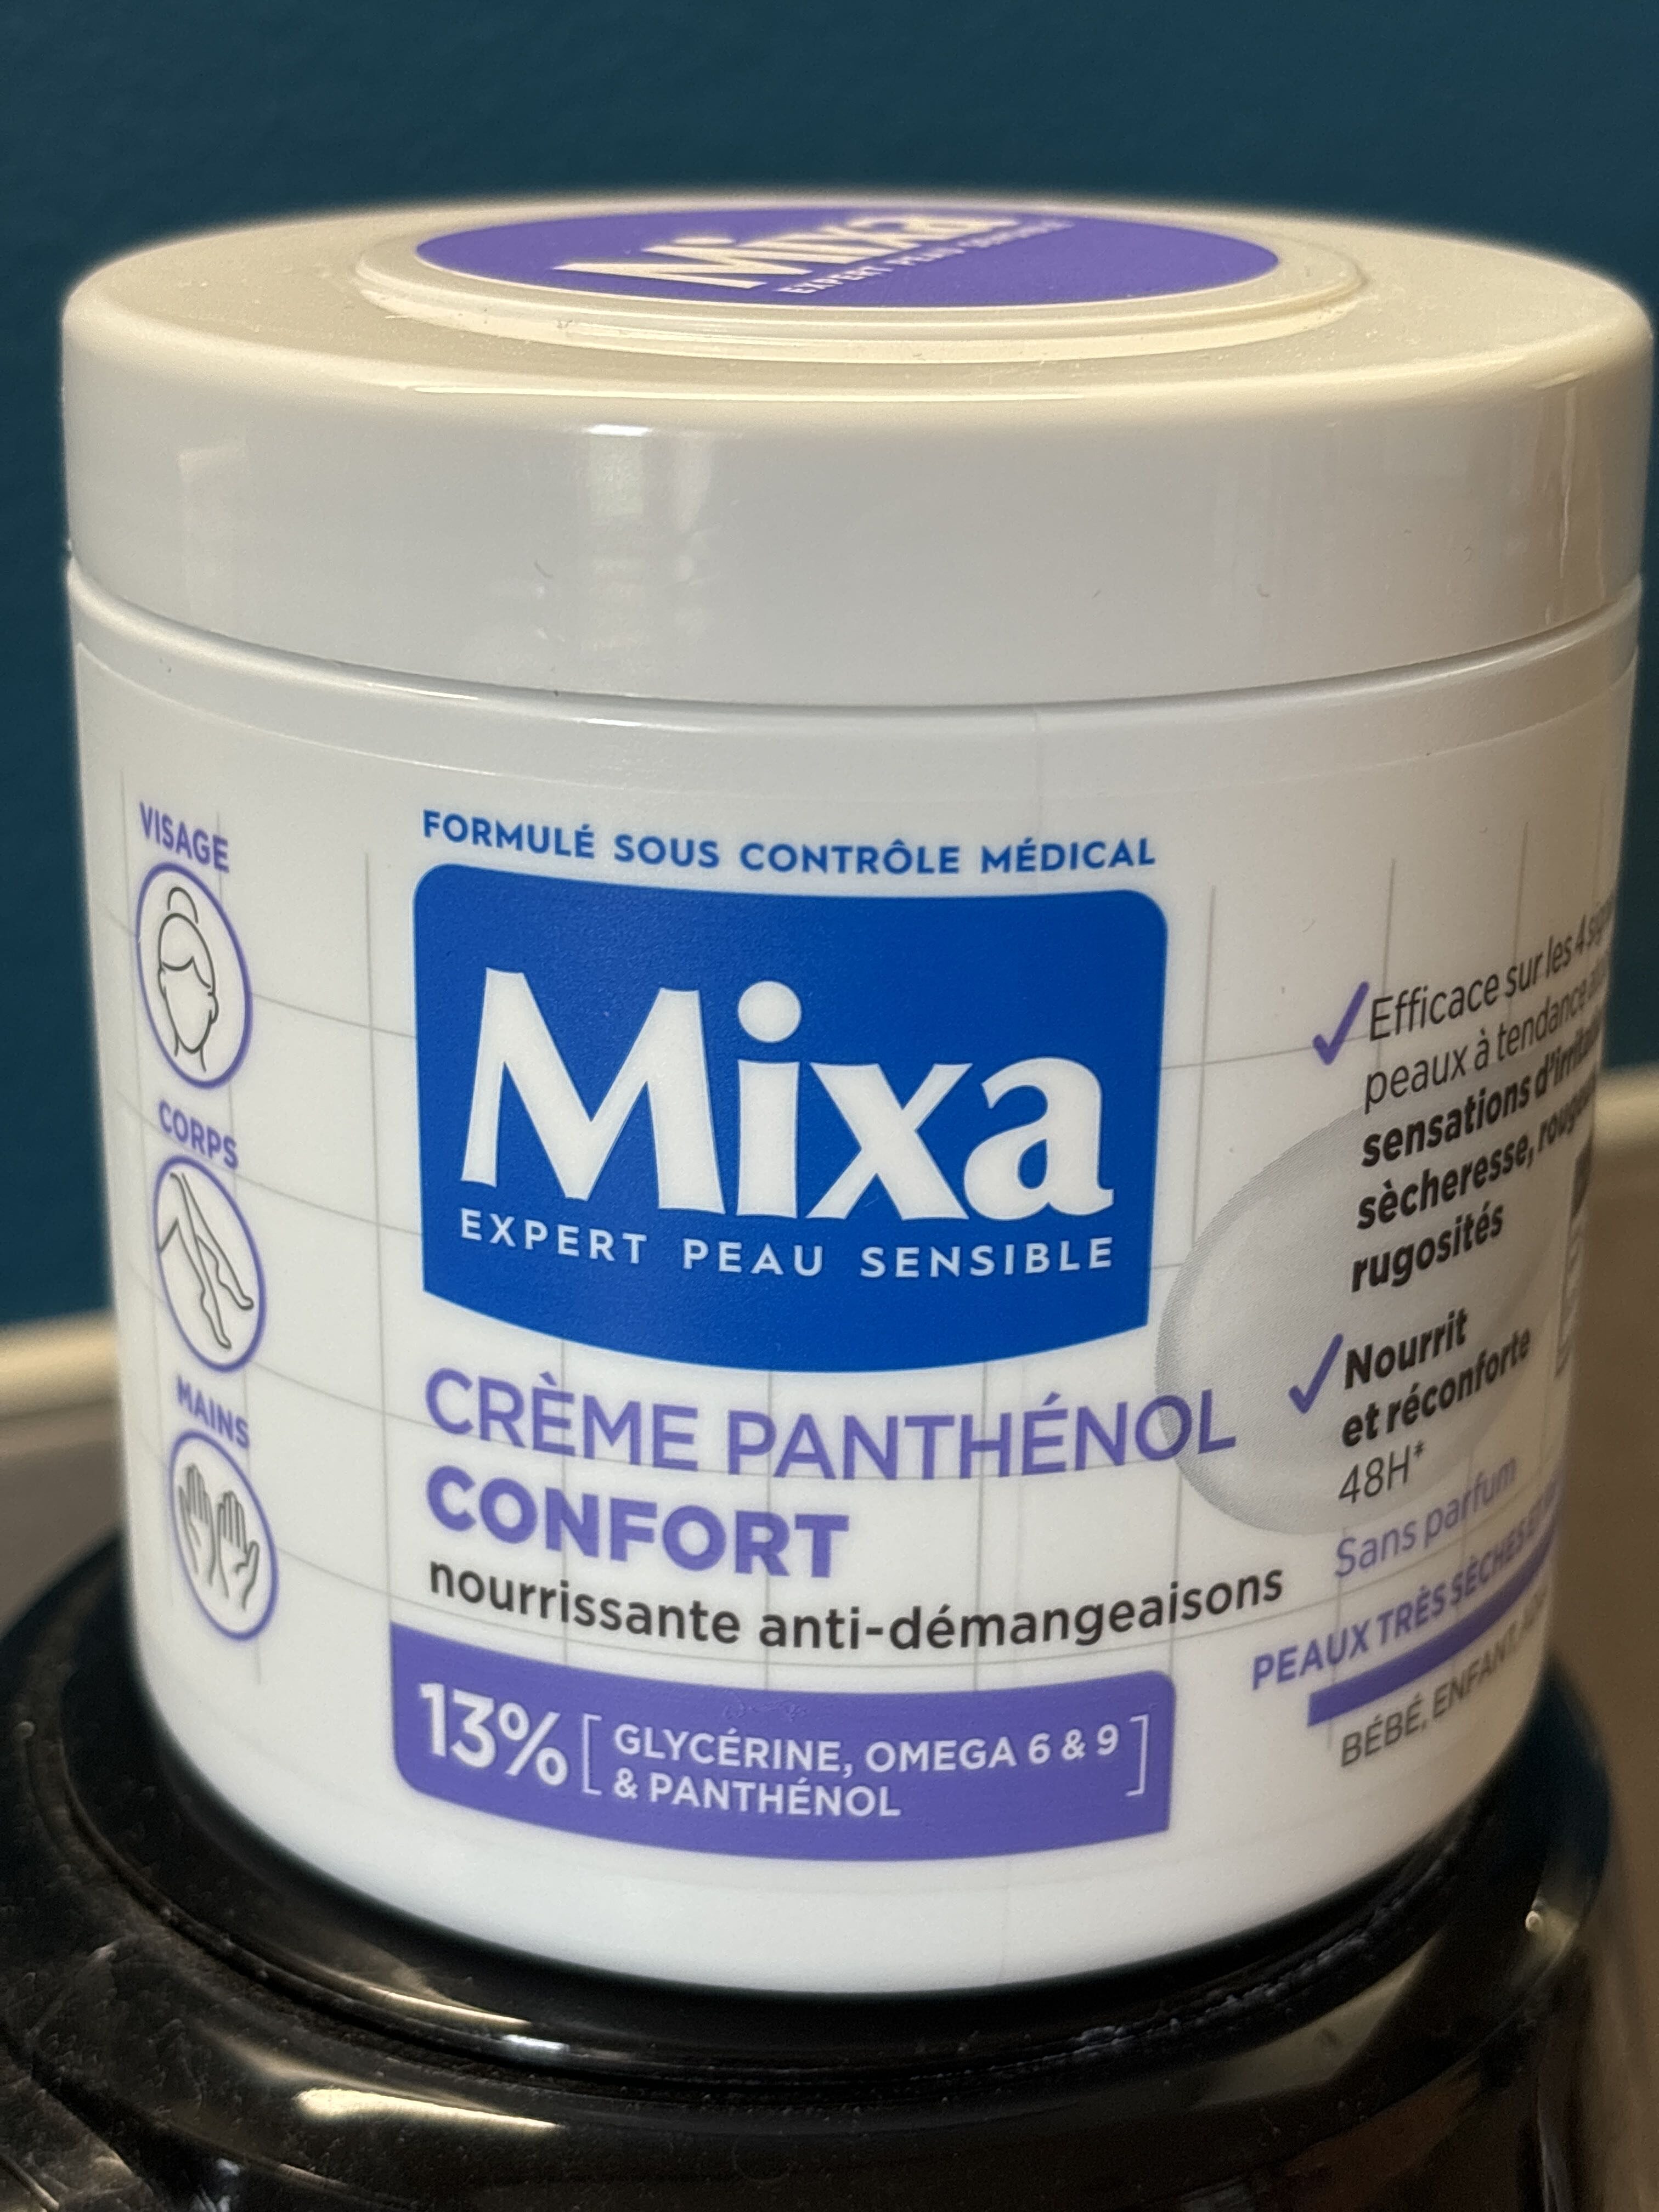 Mixa expert peau sensible - Produit - fr